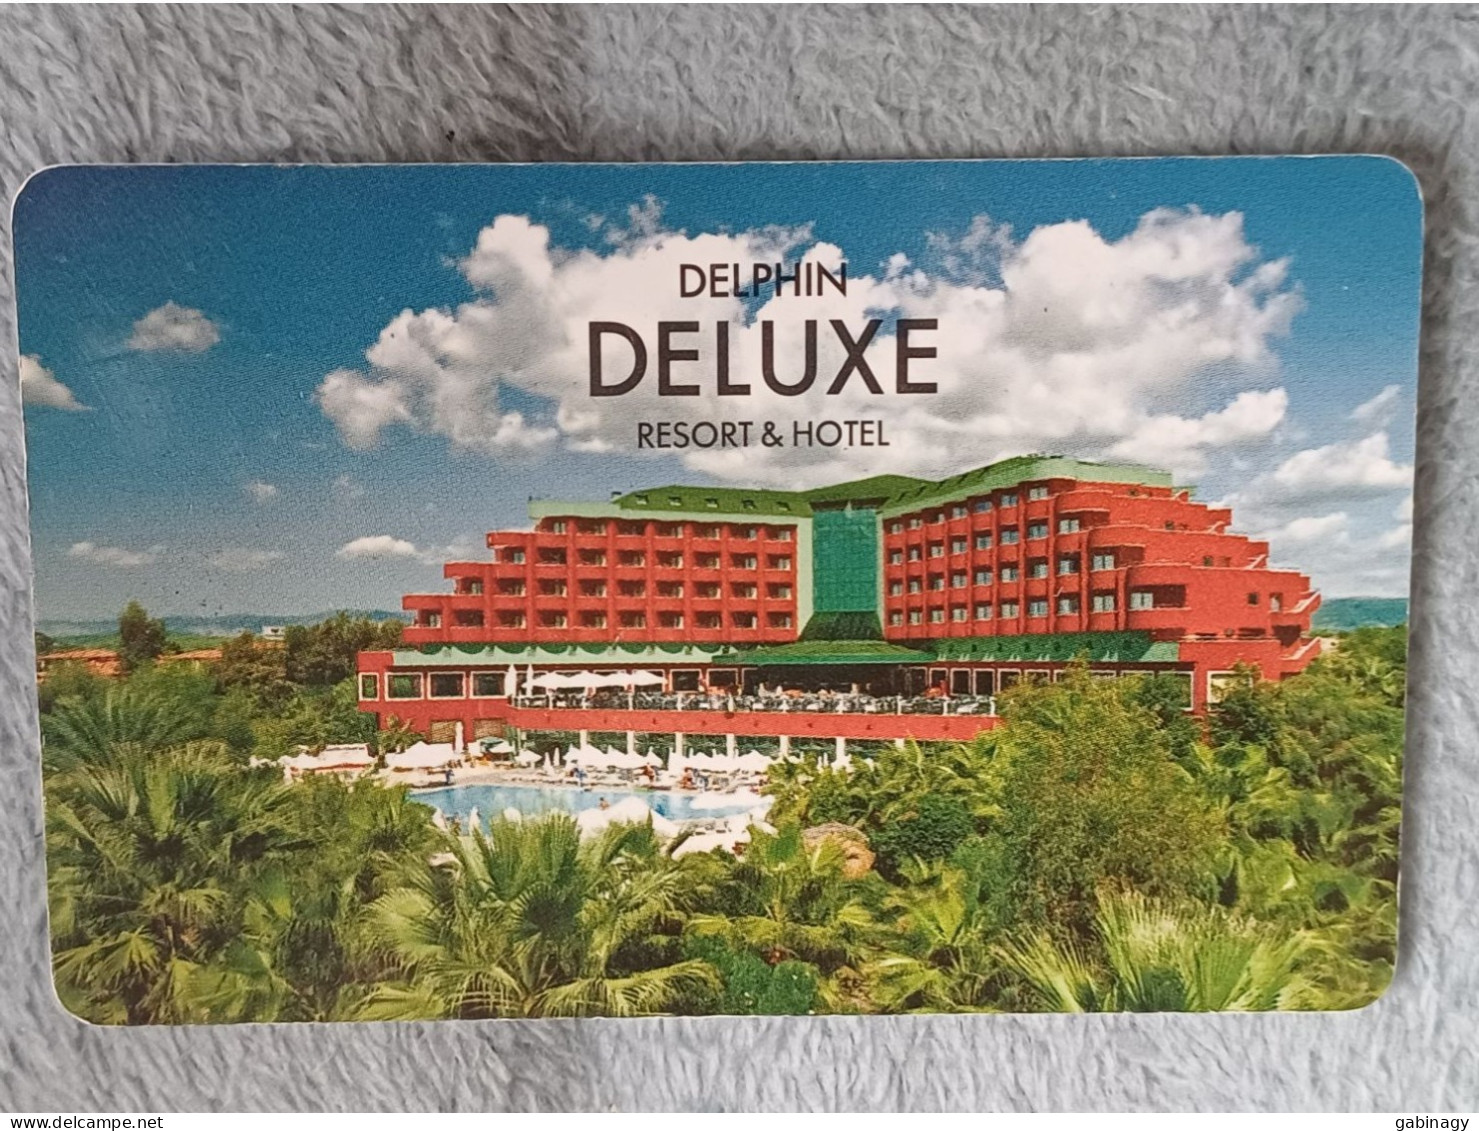 HOTEL KEYS - 2534 - TURKEY - DELPHINE DELUXE RESORT & HOTEL - Hotelsleutels (kaarten)